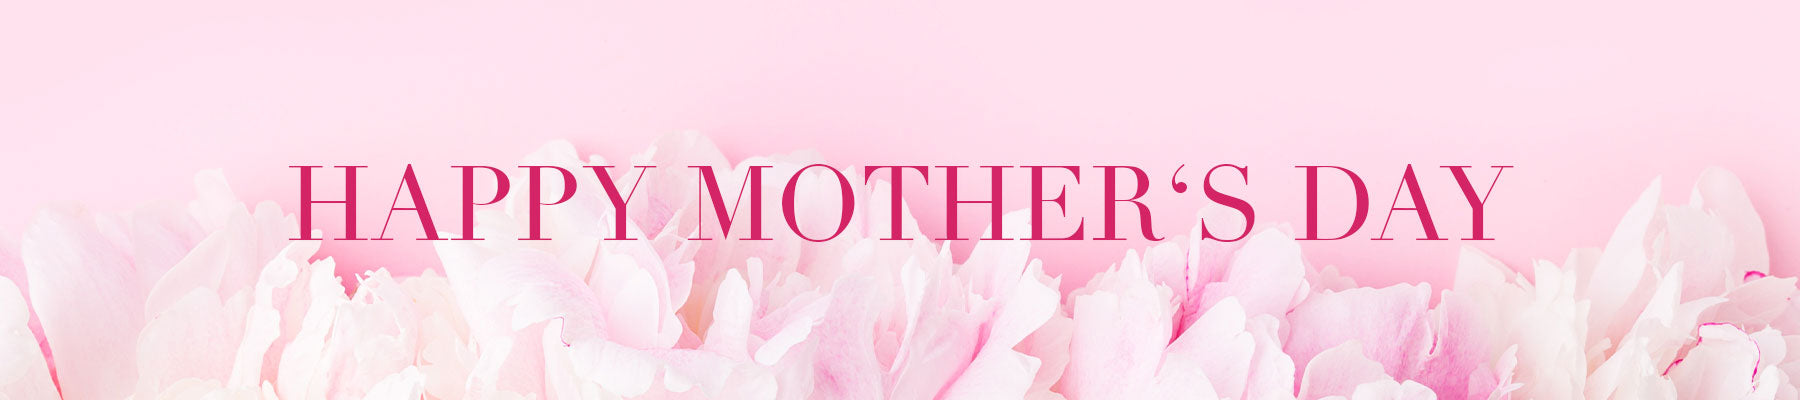 Rosa Hintergrund mit weiß-rosa Pfingstrosen mit einem pinken Schriftzug: Happy Mother's Day.